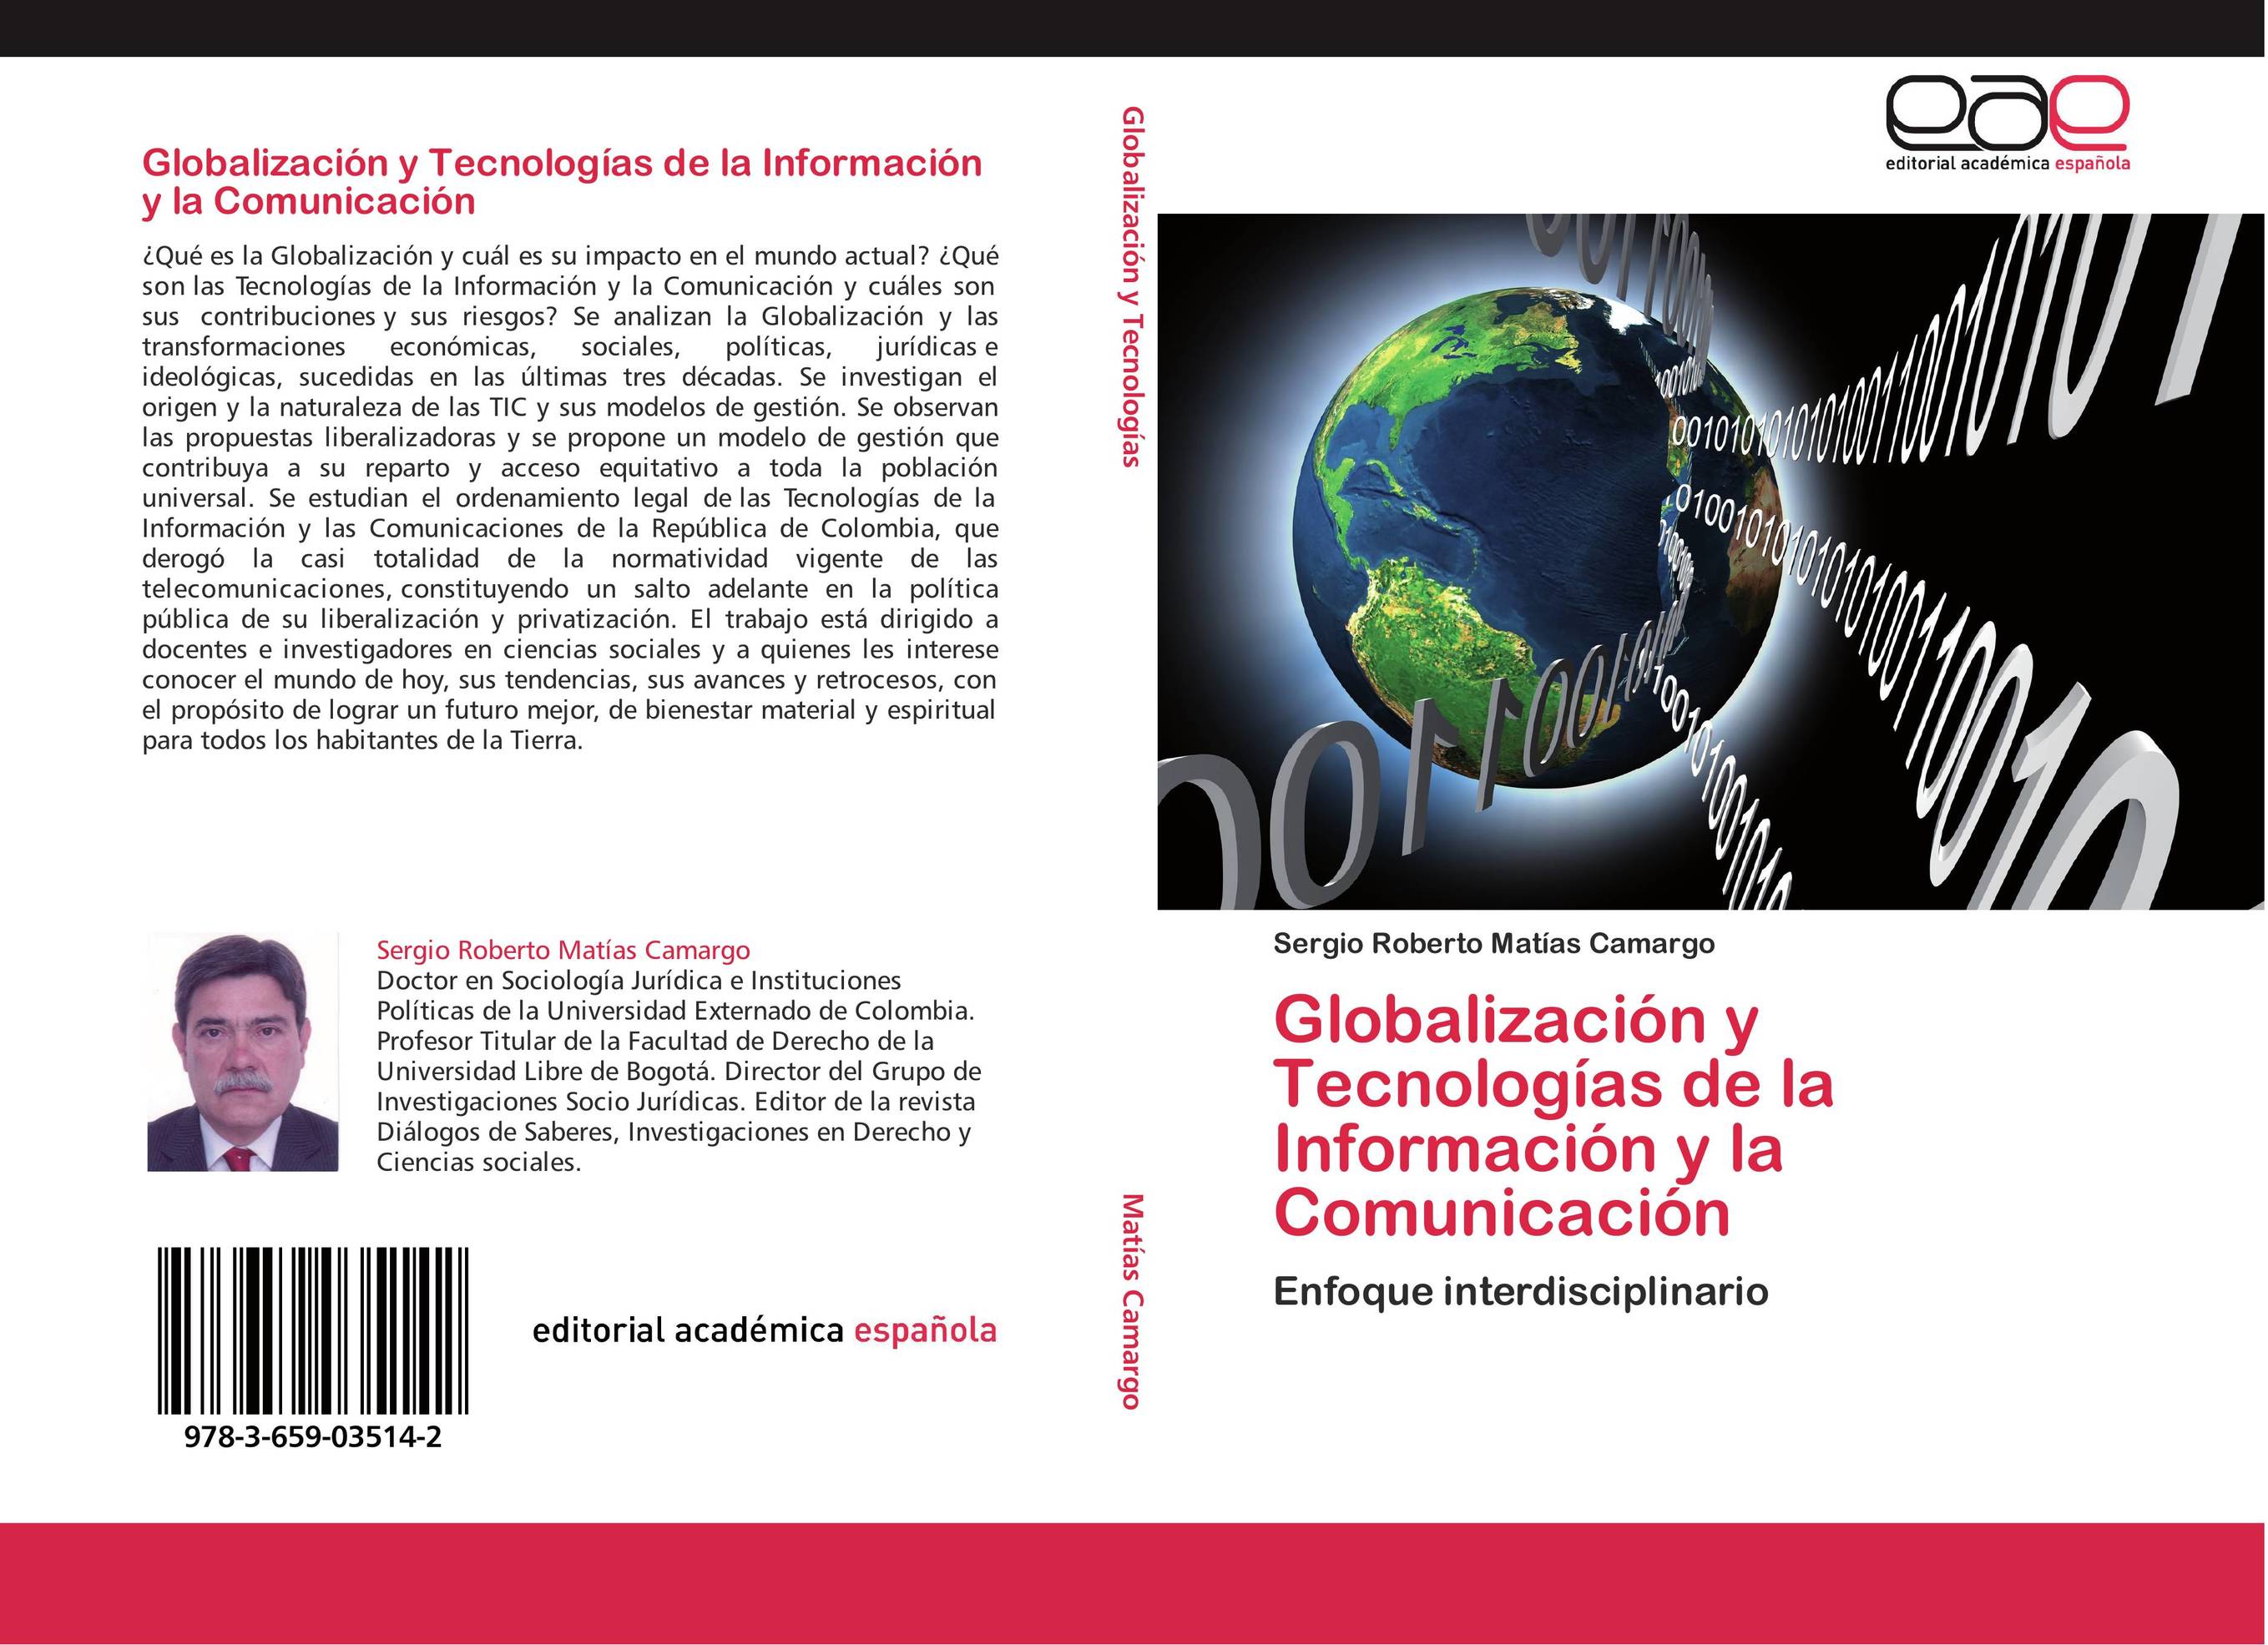 Globalización y Tecnologías de la Información y la Comunicación